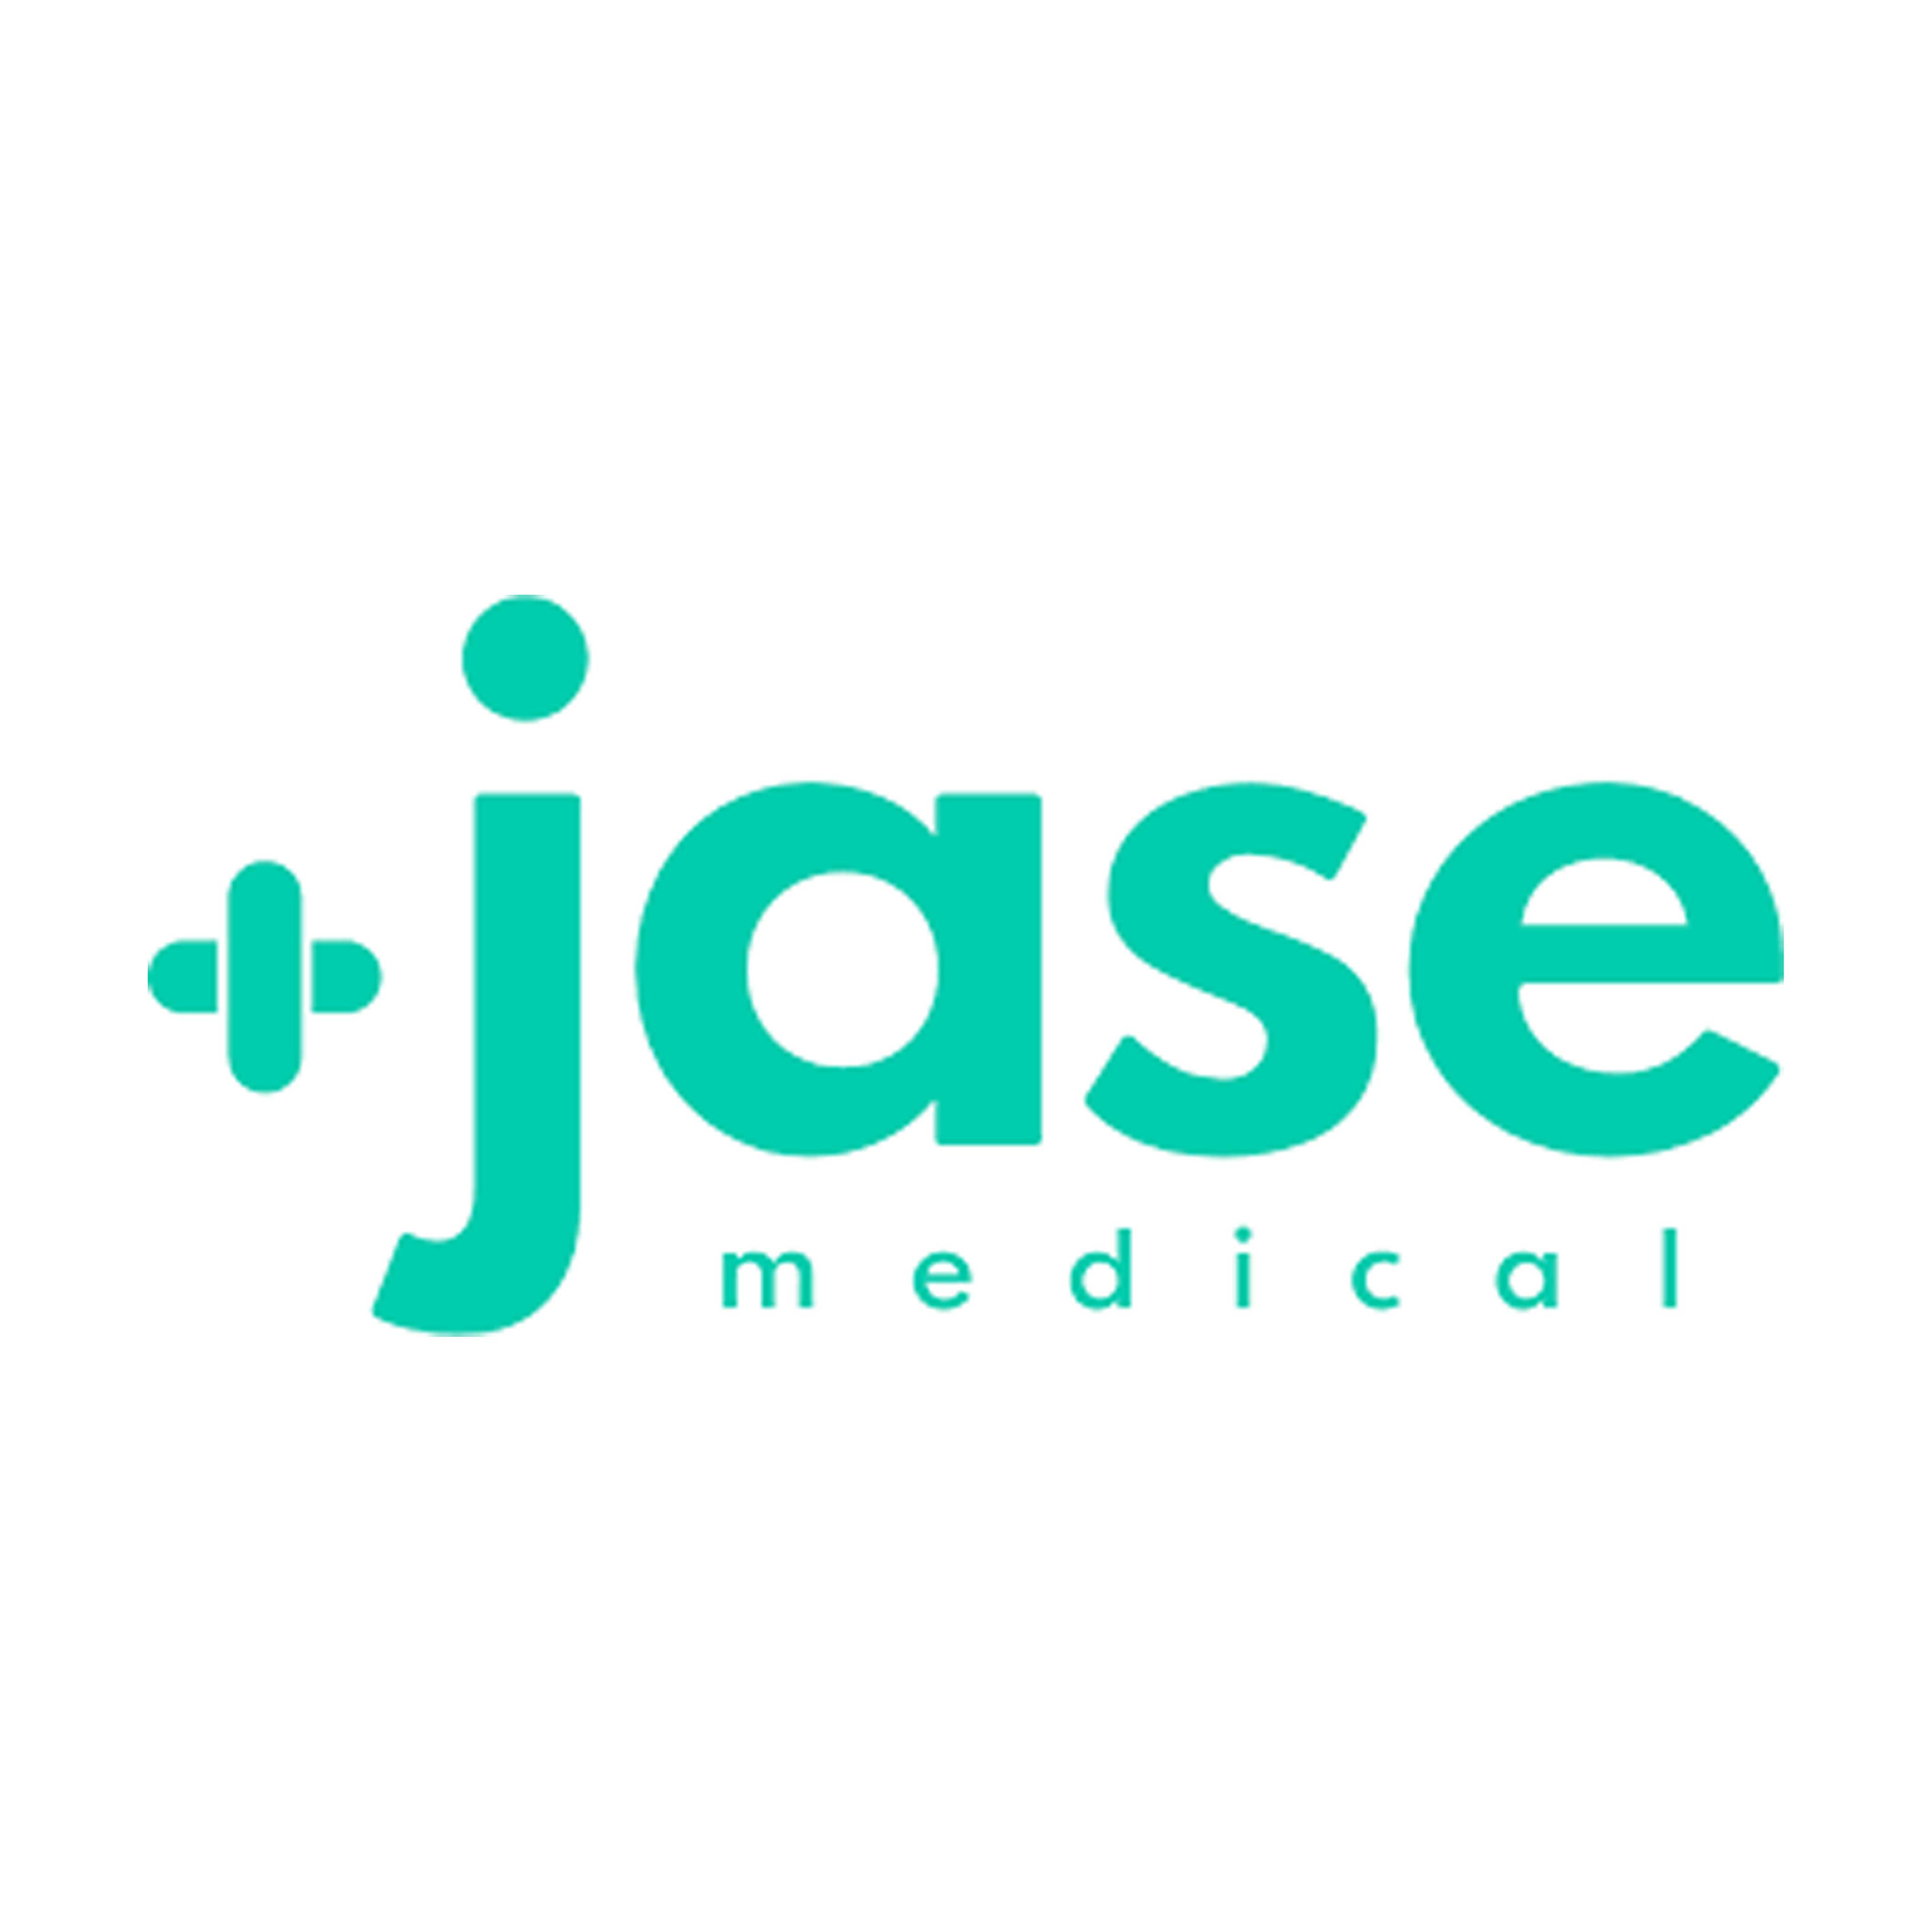 Jase Medical